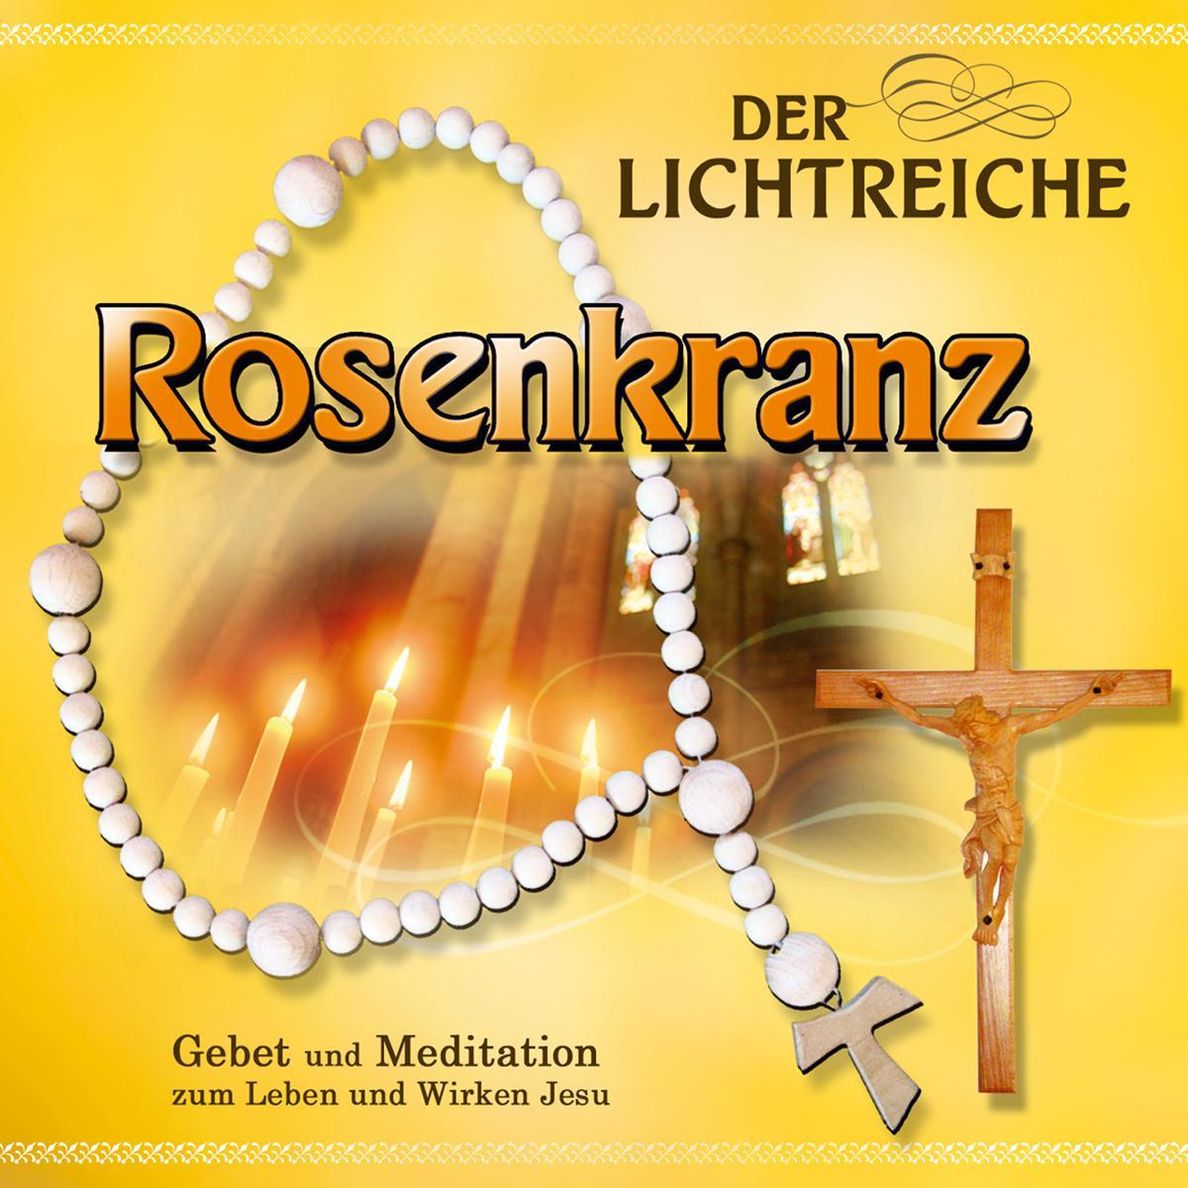 Der lichtreiche Rosenkranz, 1 Audio-CD Hörbuch jetzt bei   bestellen